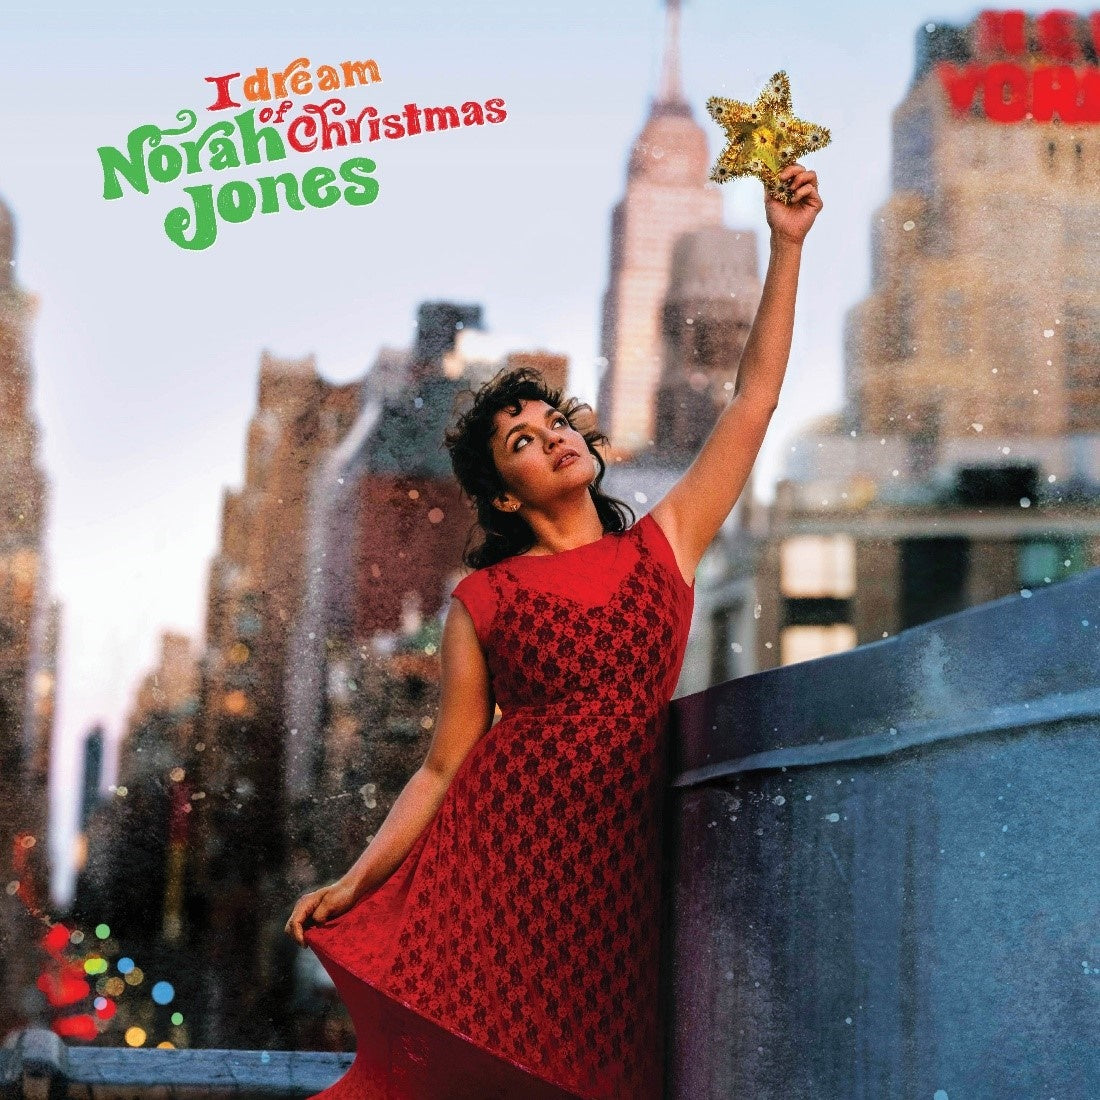 Norah Jones | I Dream Of Christmas [CD] | CD